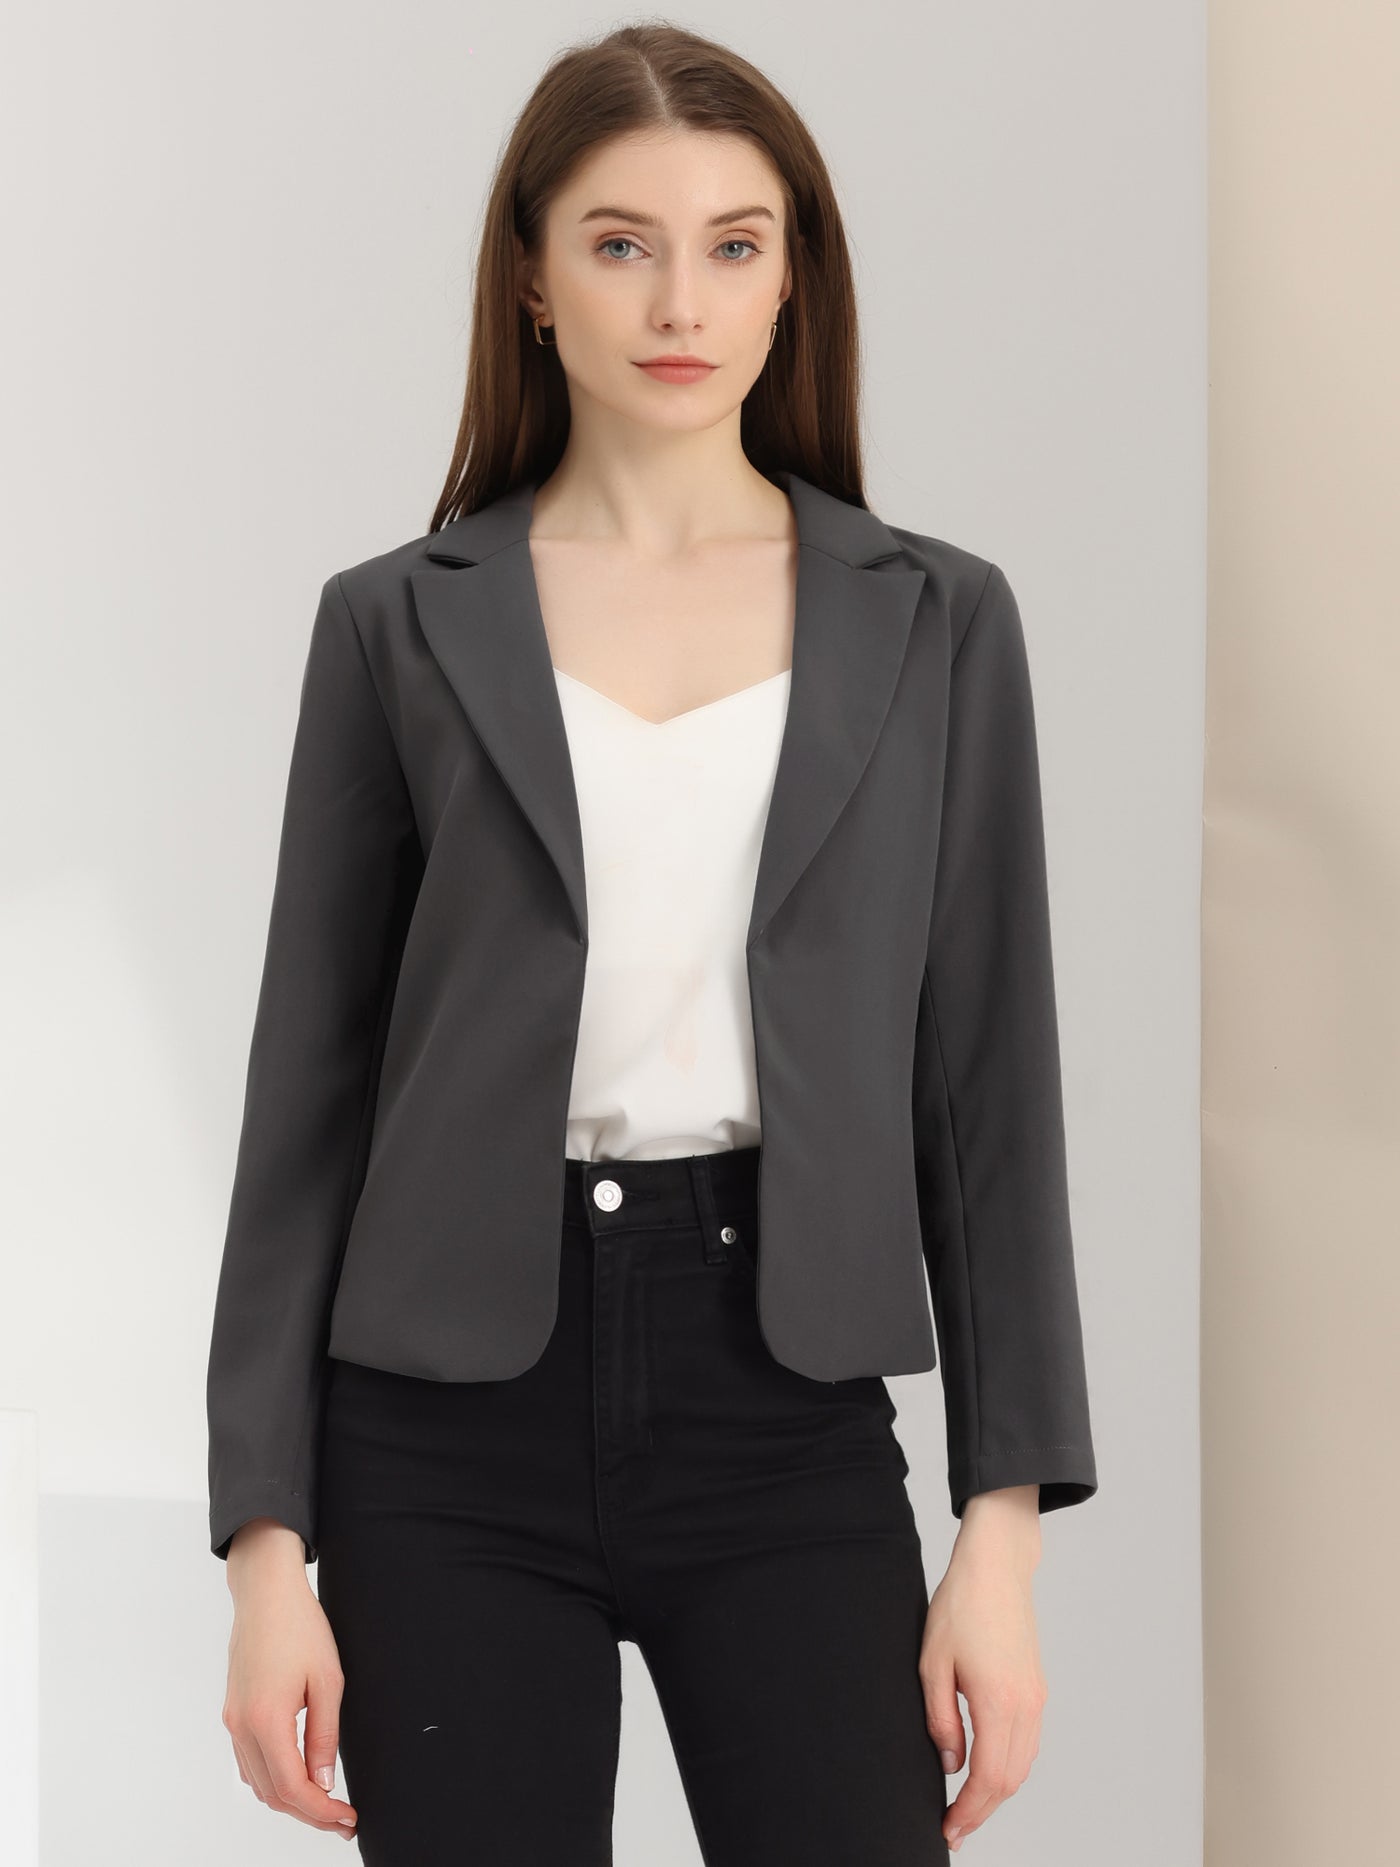 Allegra K Open Front Office Work Business Crop Suit Blazer Jacket